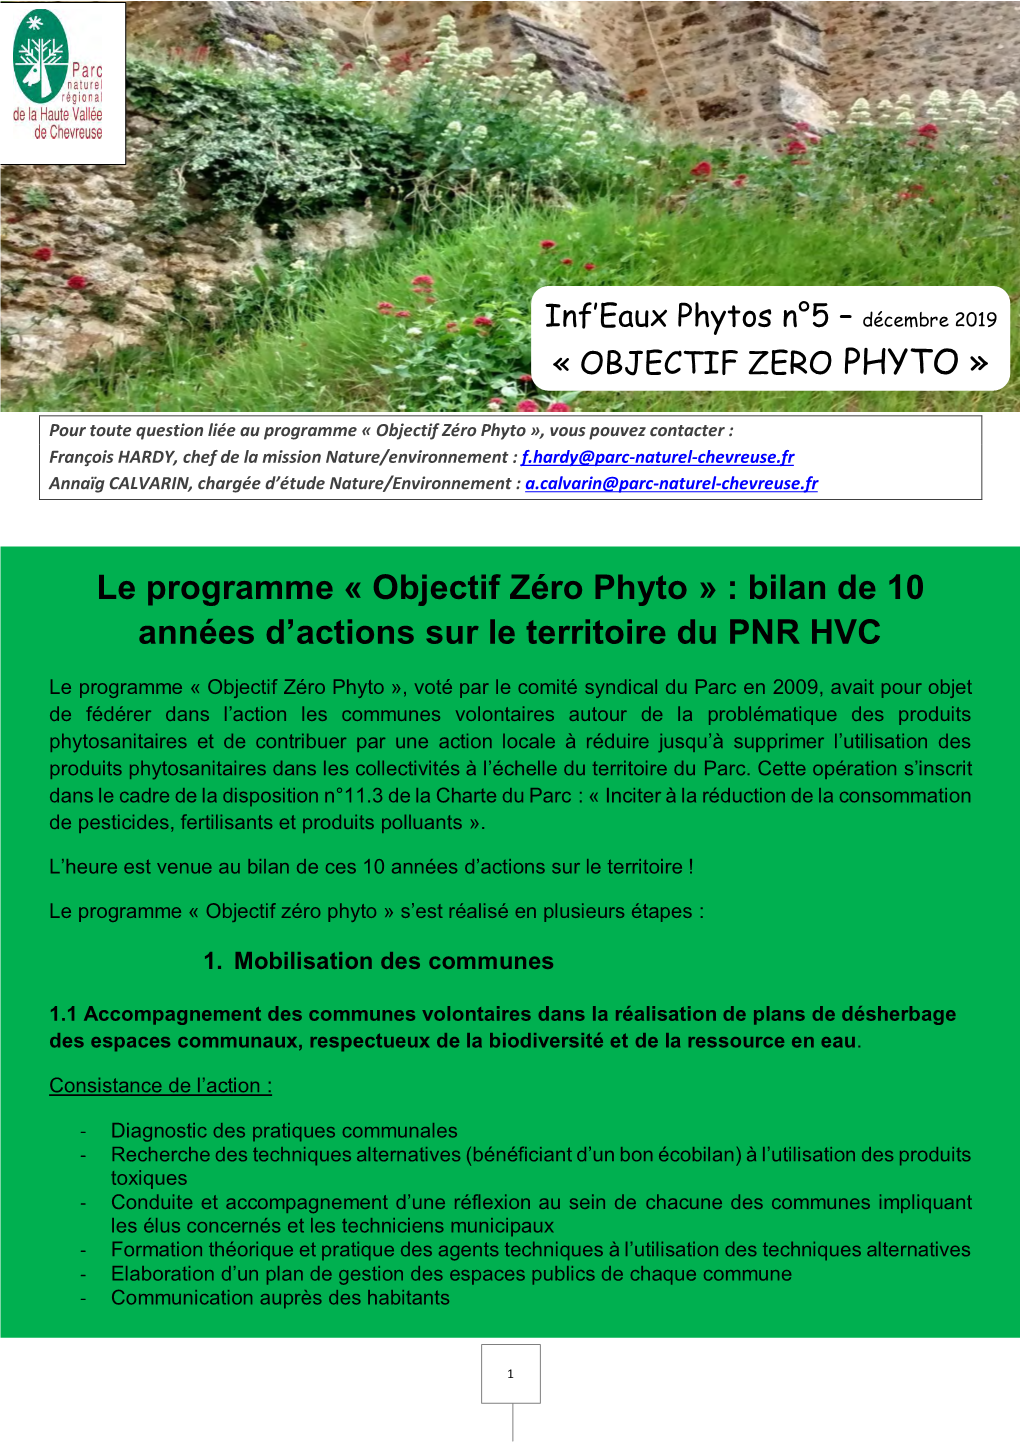 Le Programme « Objectif Zéro Phyto » : Bilan De 10 Années D'actions Sur Le